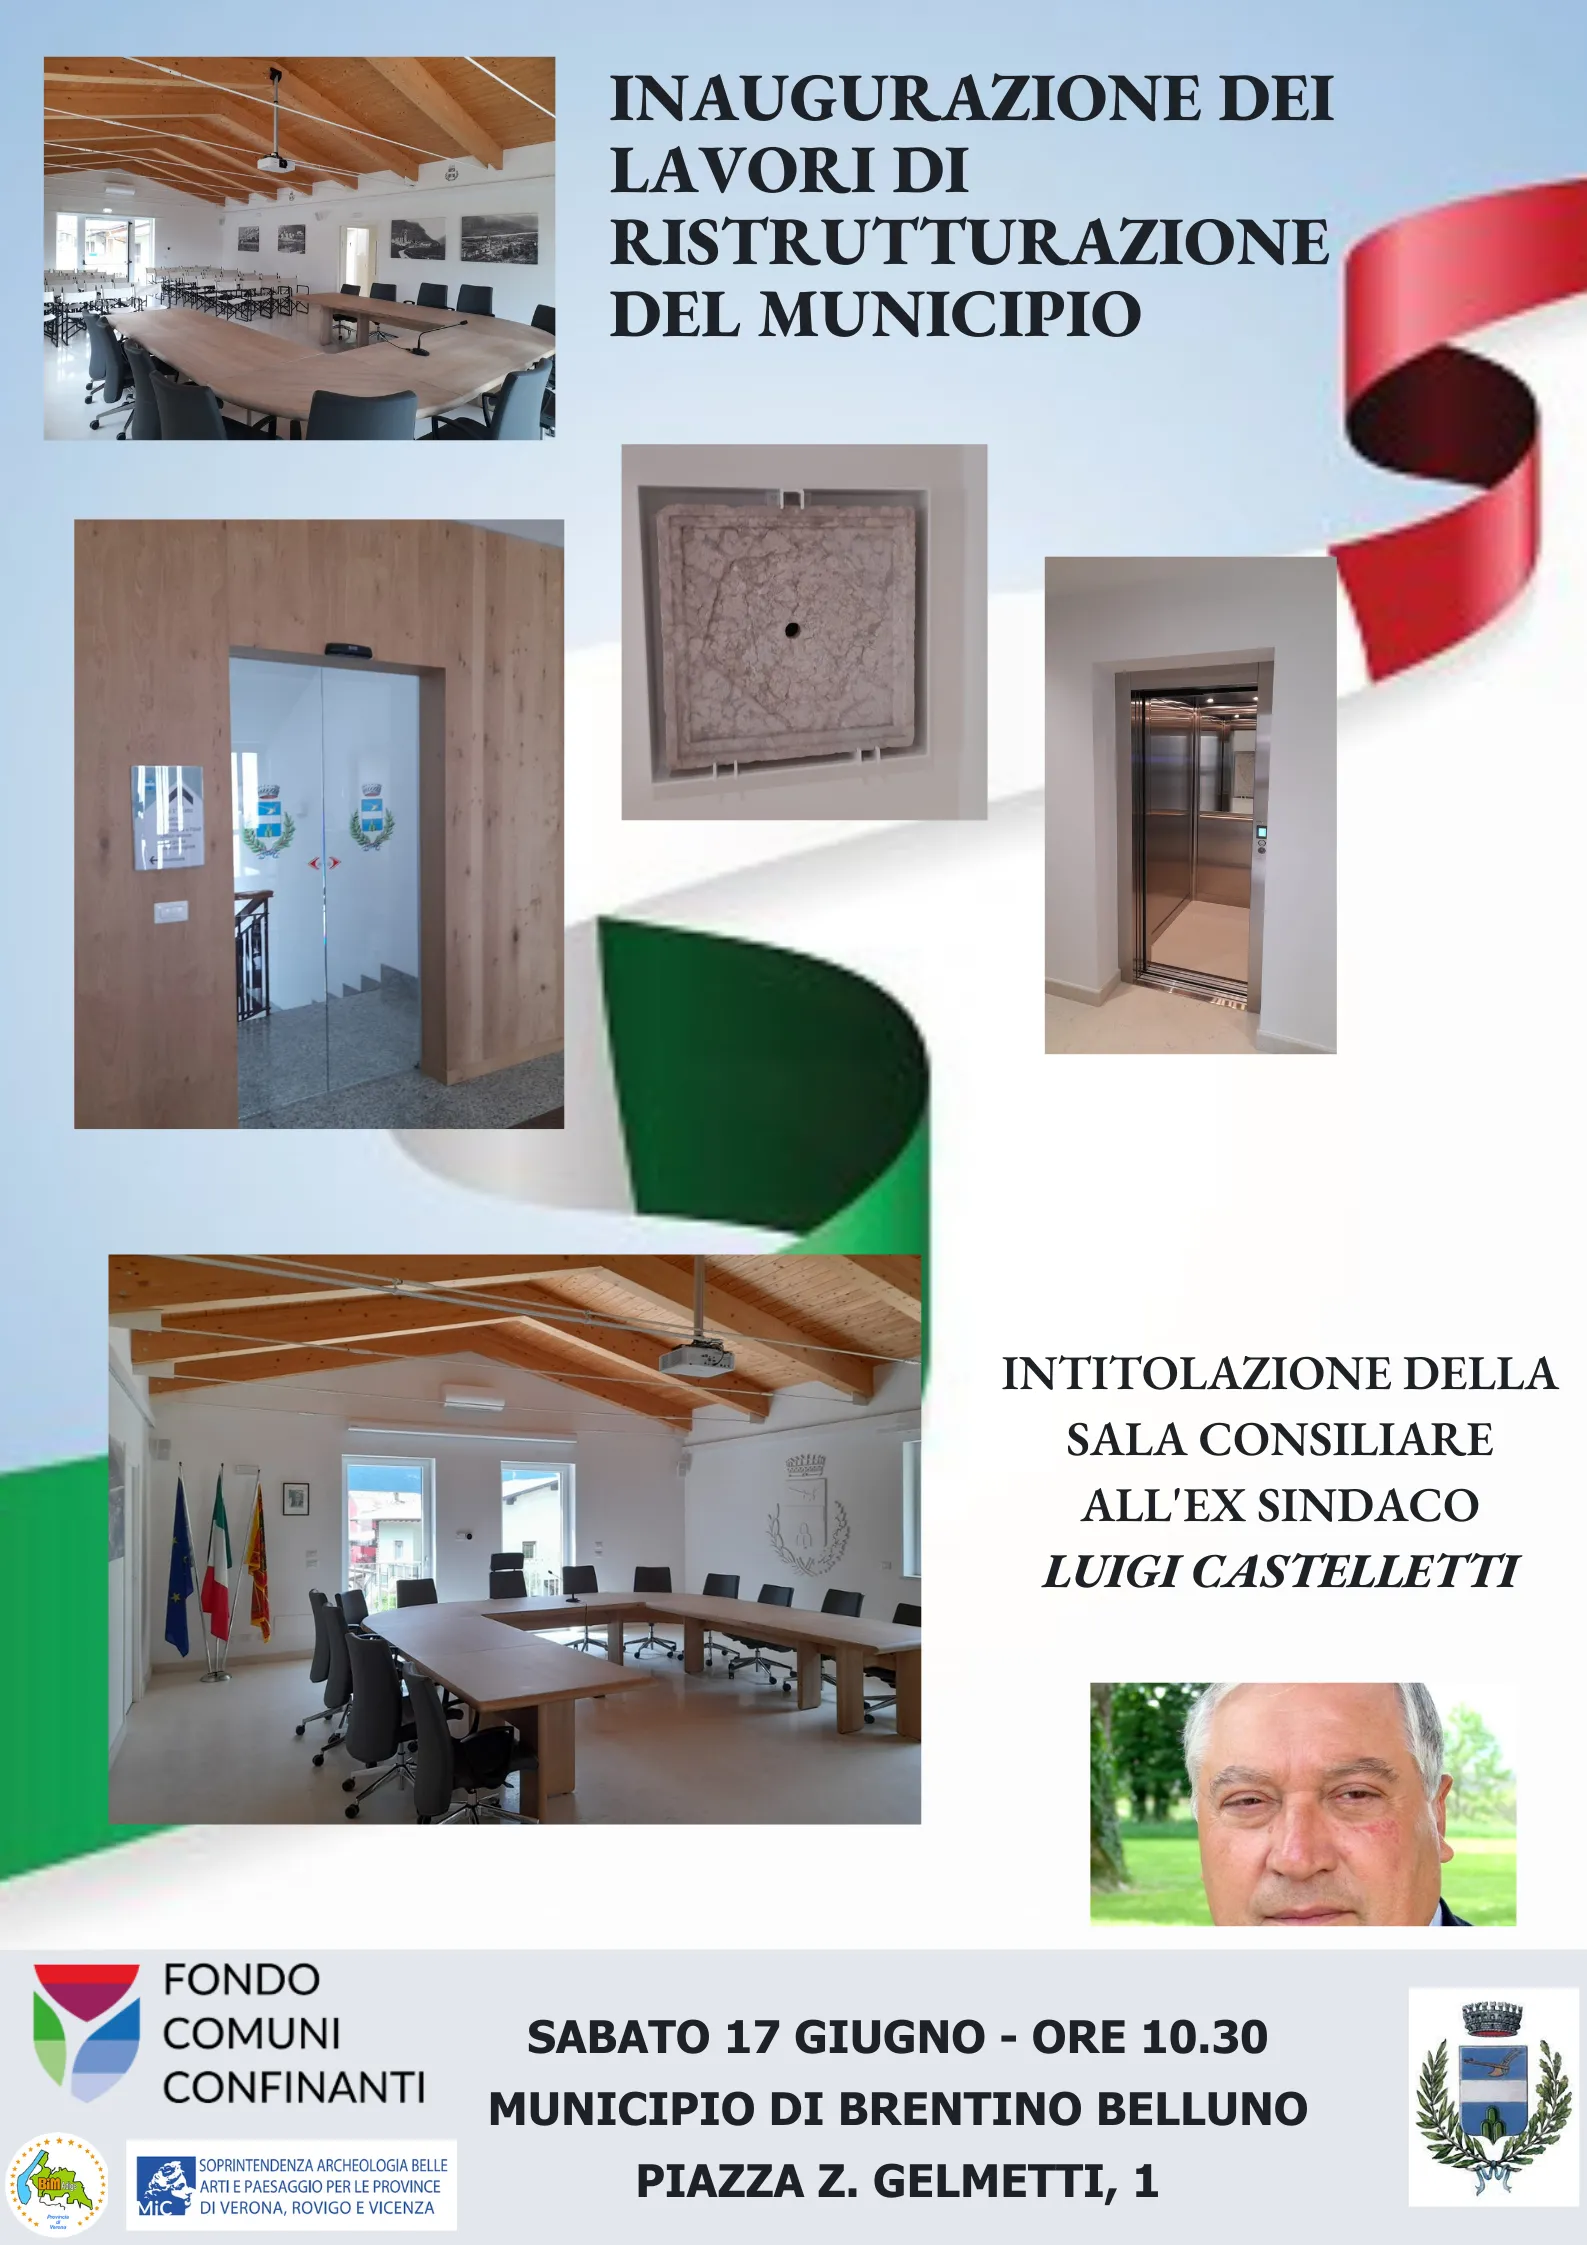 Inaugurazione dei lavori del Municipio e intitolazione della Sala Consiliare a Luigi Castelletti